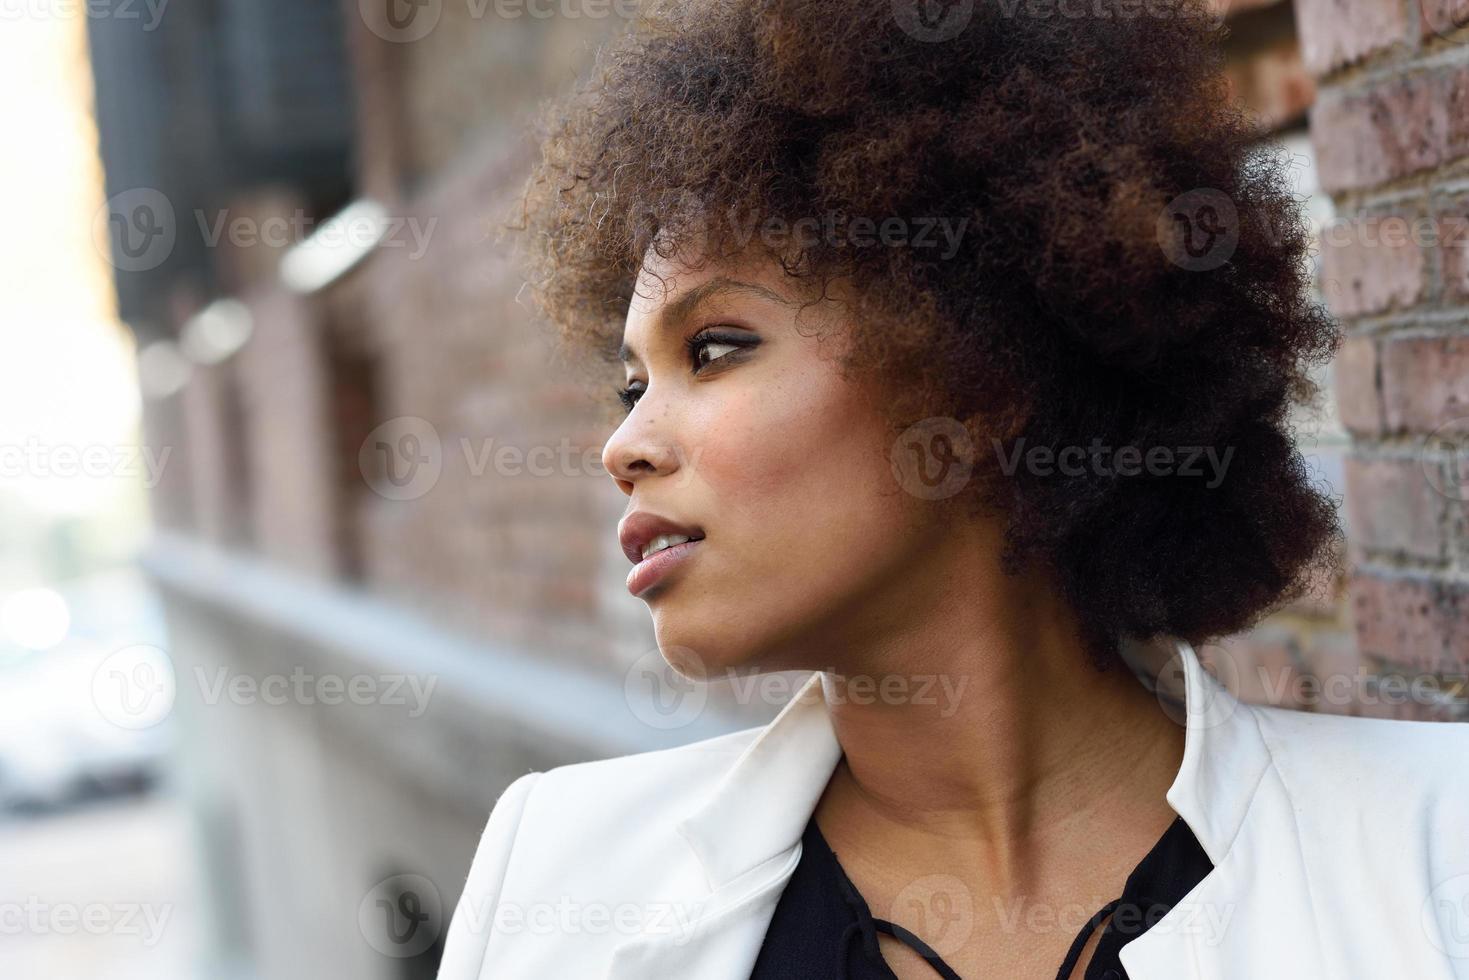 jovem negra com penteado afro em pé no meio urbano foto